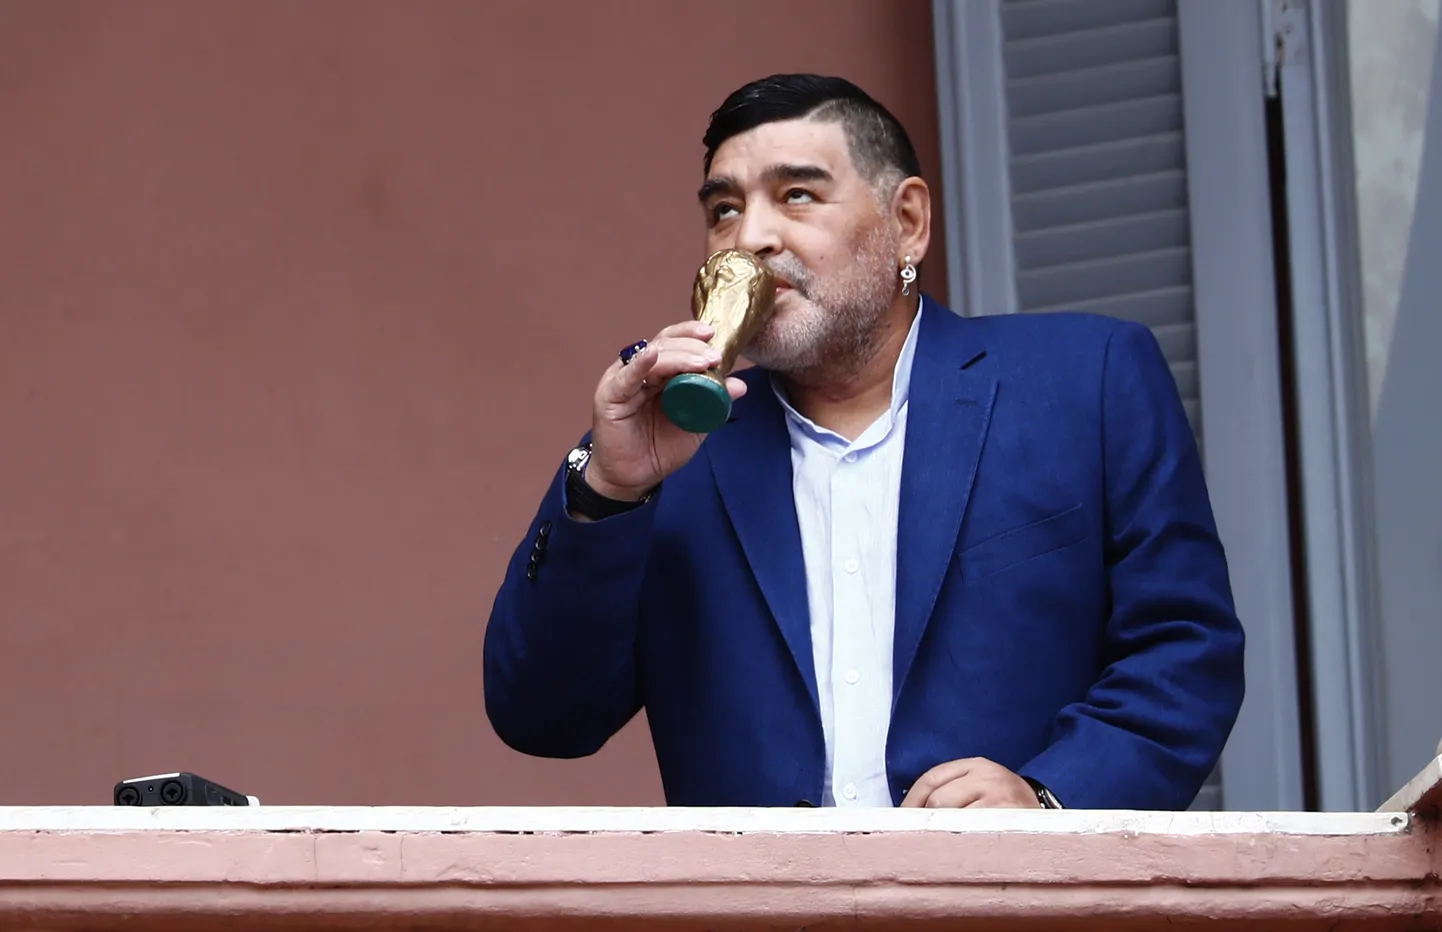 Diego Maradona suudlemas 1986. aastal võidetud MM-karika koopiat. Foto on tehtud 2019. aasta 26. detsembril Bueno Aireses, Casa Rosada valitsushoone rõdul.